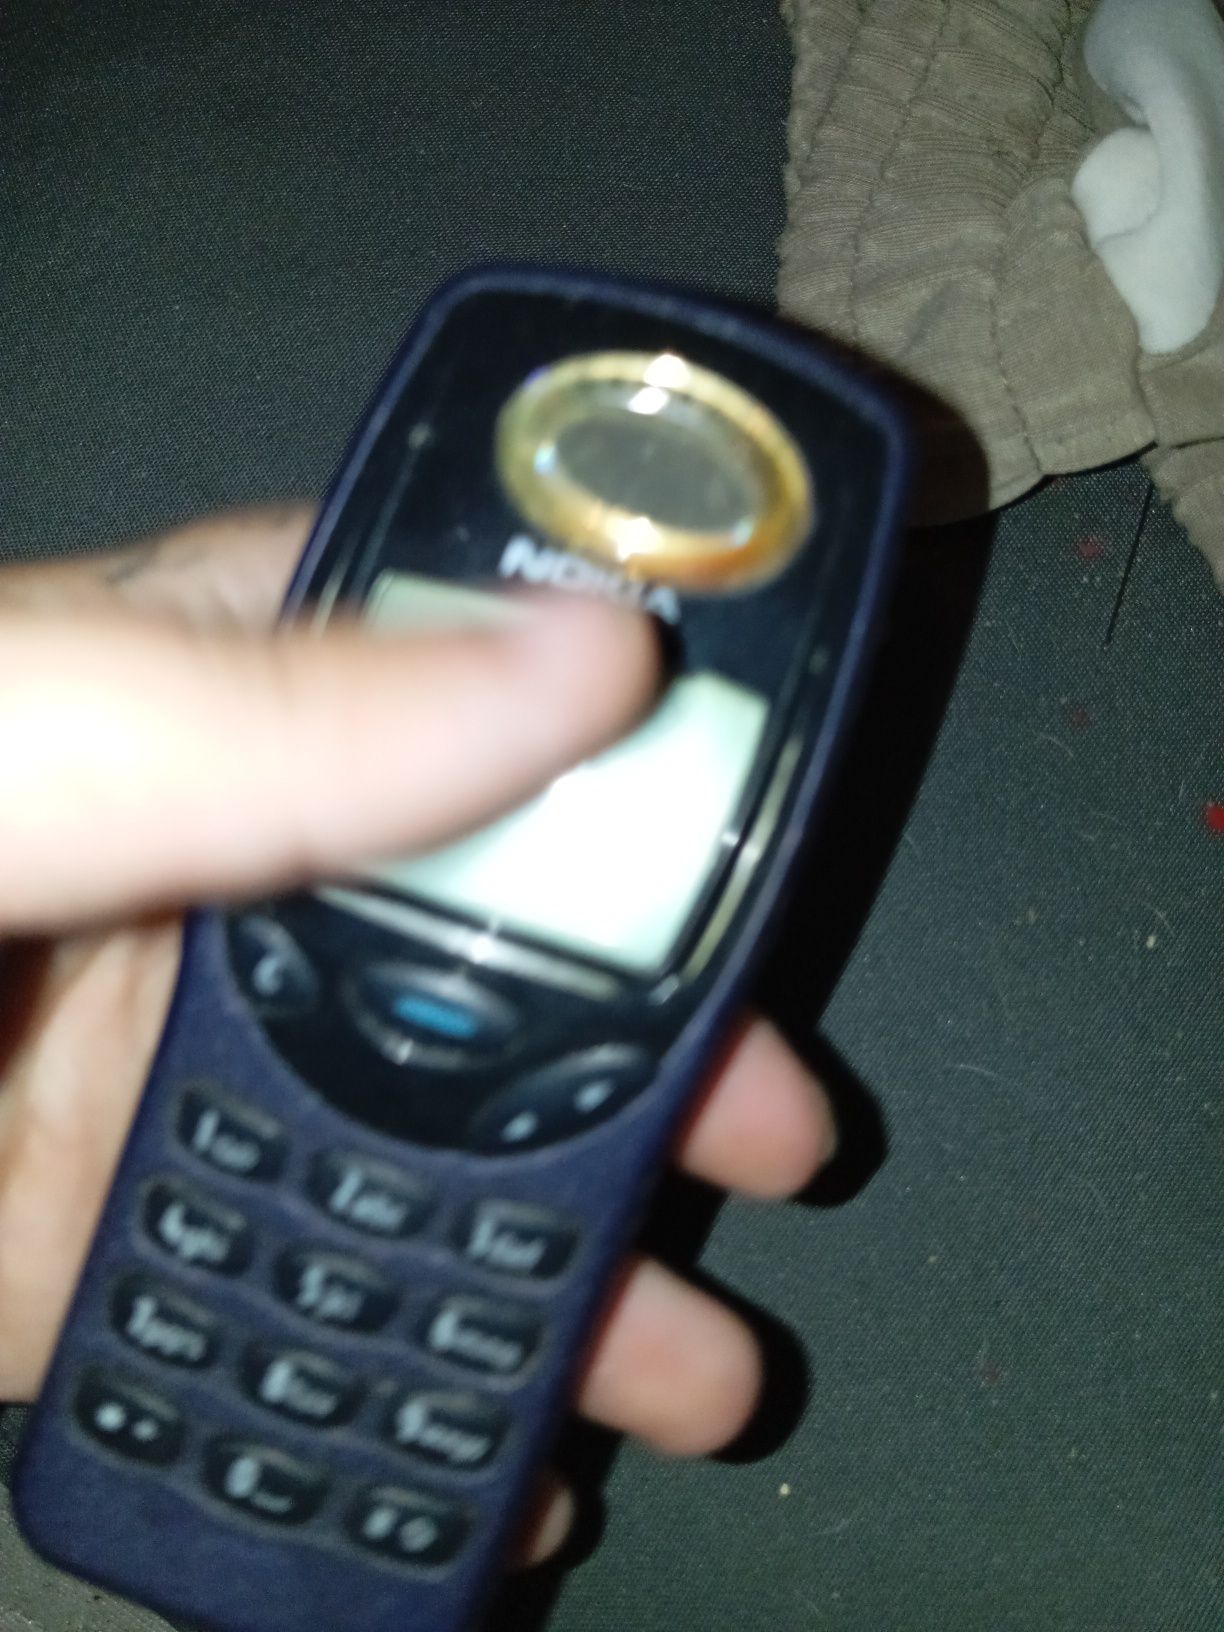 Telefone Nokia não sei se funciona antigo